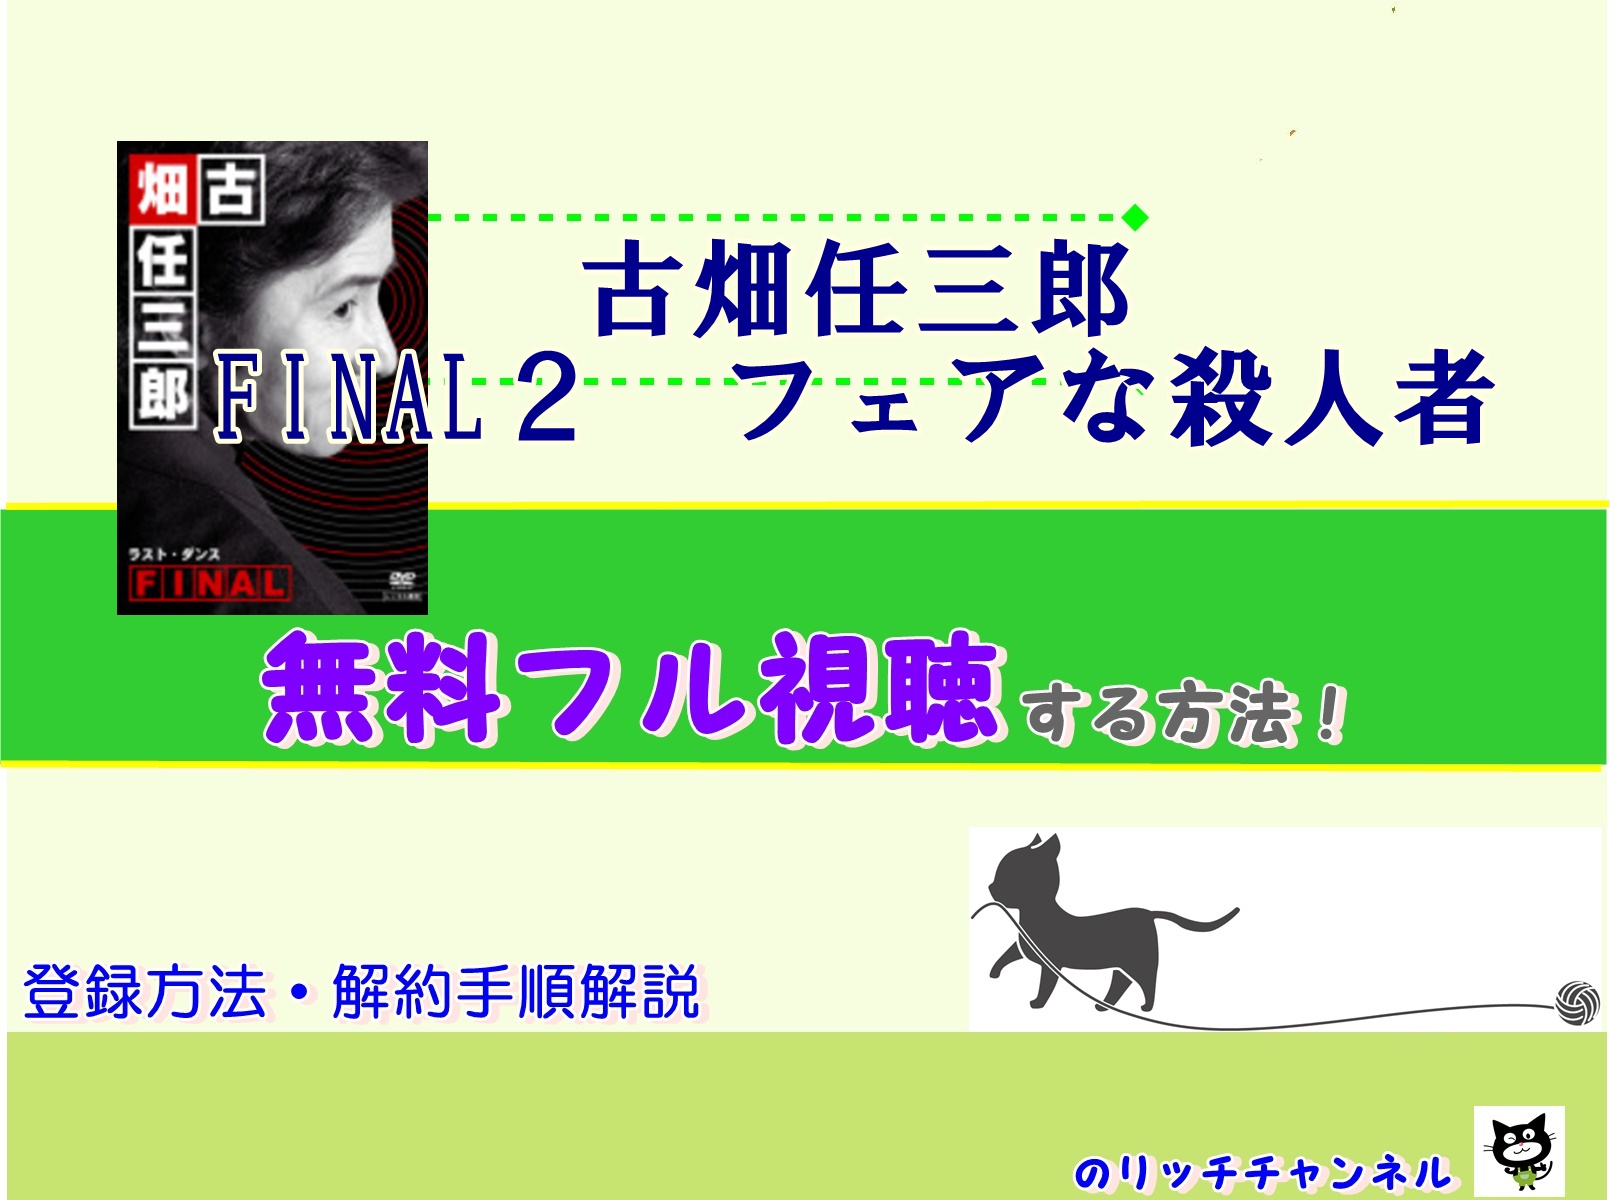 古畑任三郎 Final2 フェアな殺人者 見逃し動画を無料視聴する方法 のりっちチャンネル